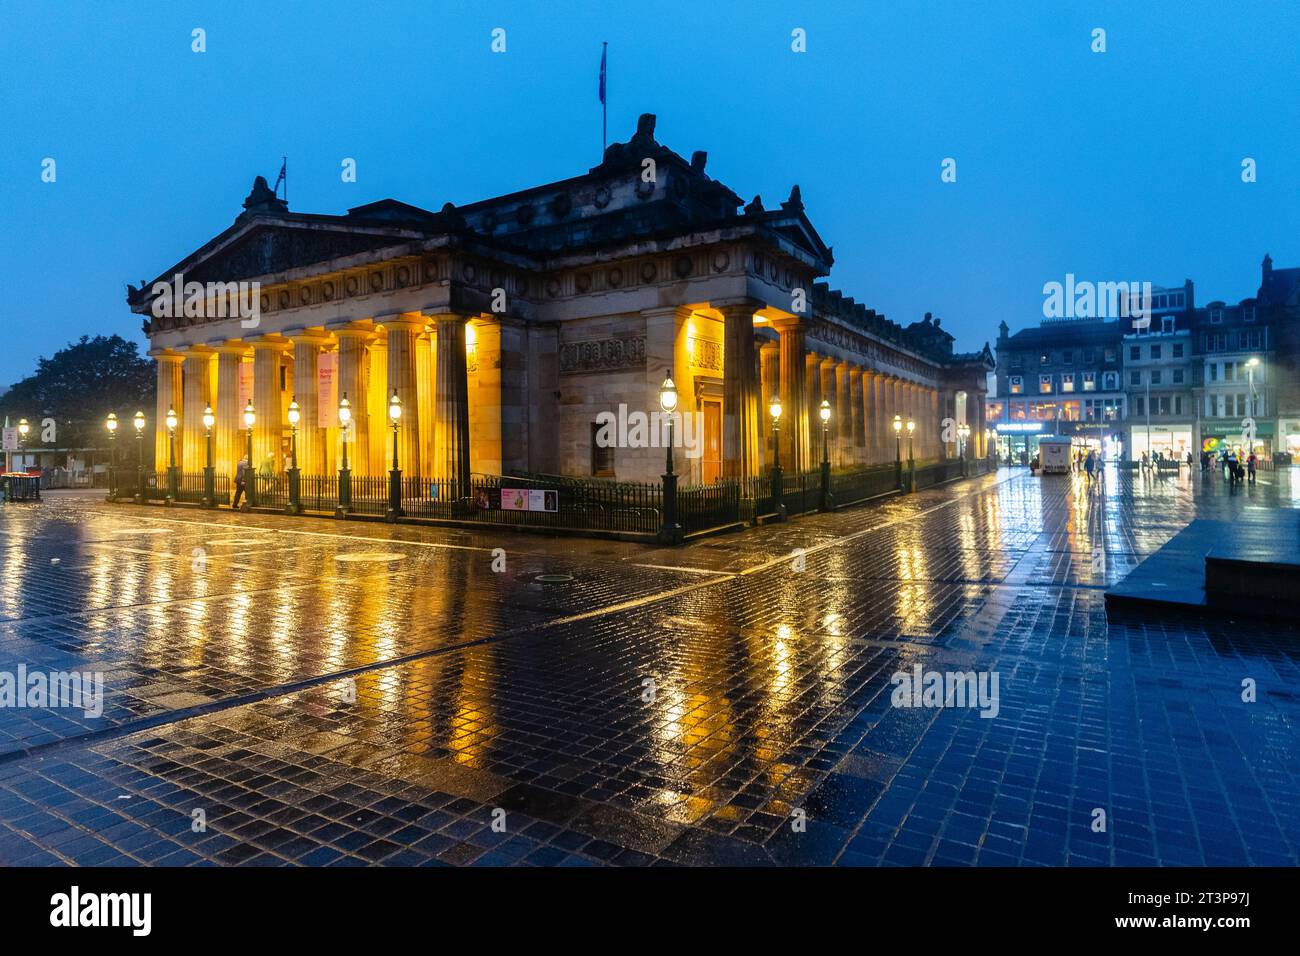 Abendlicher Blick auf das Kunstmuseum der Royal Scottish Academy mit Flutlicht im Regen in Edinburgh, Schottland, Großbritannien Stockfoto